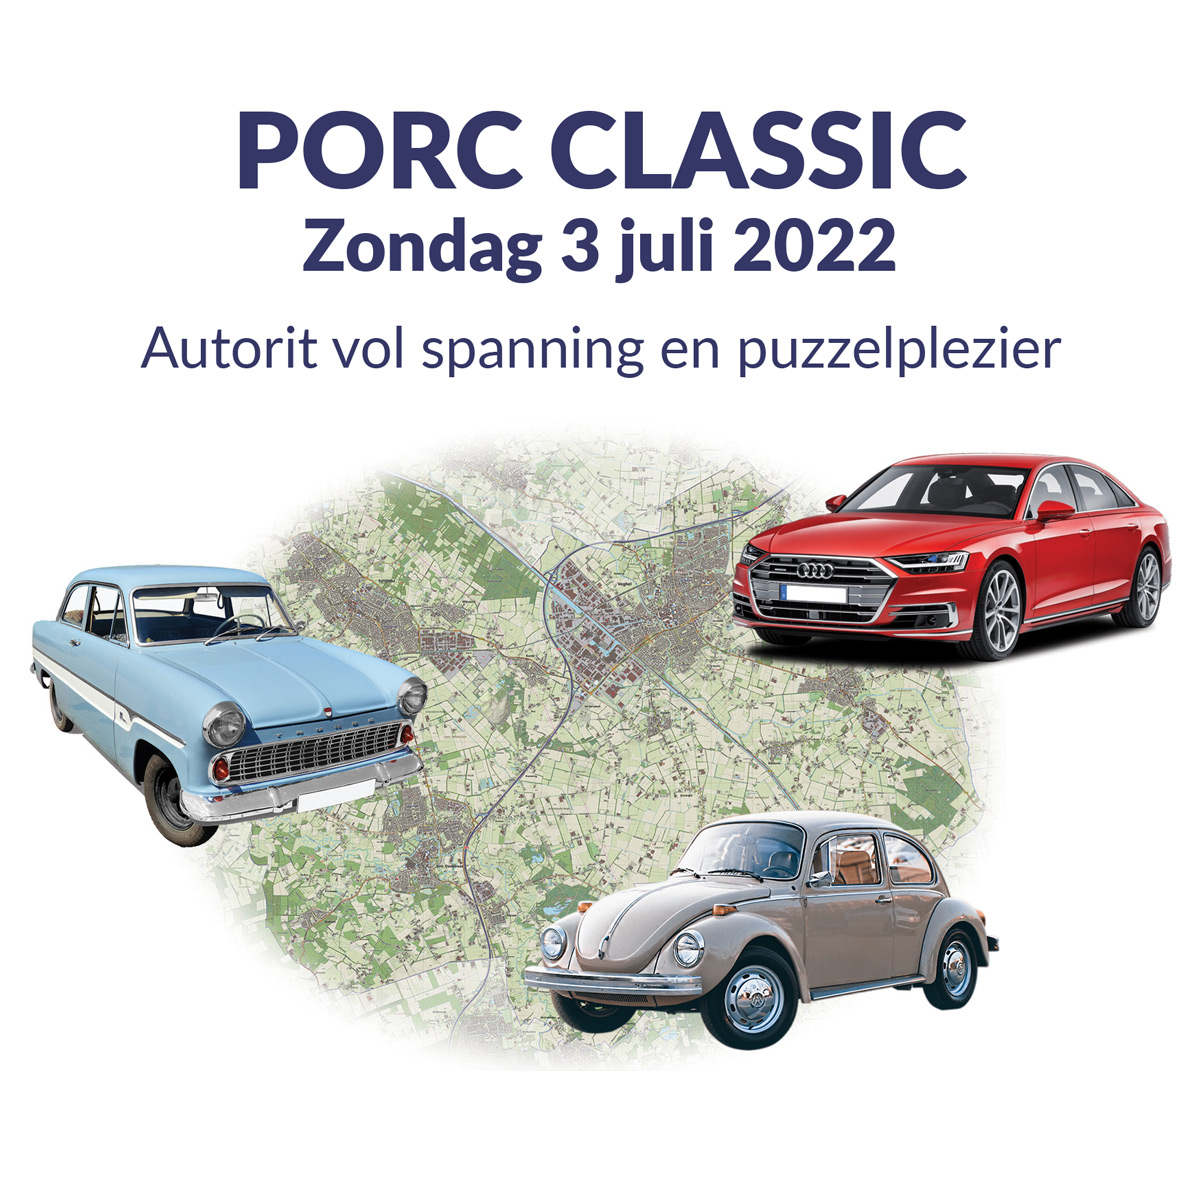 porcclassic2022